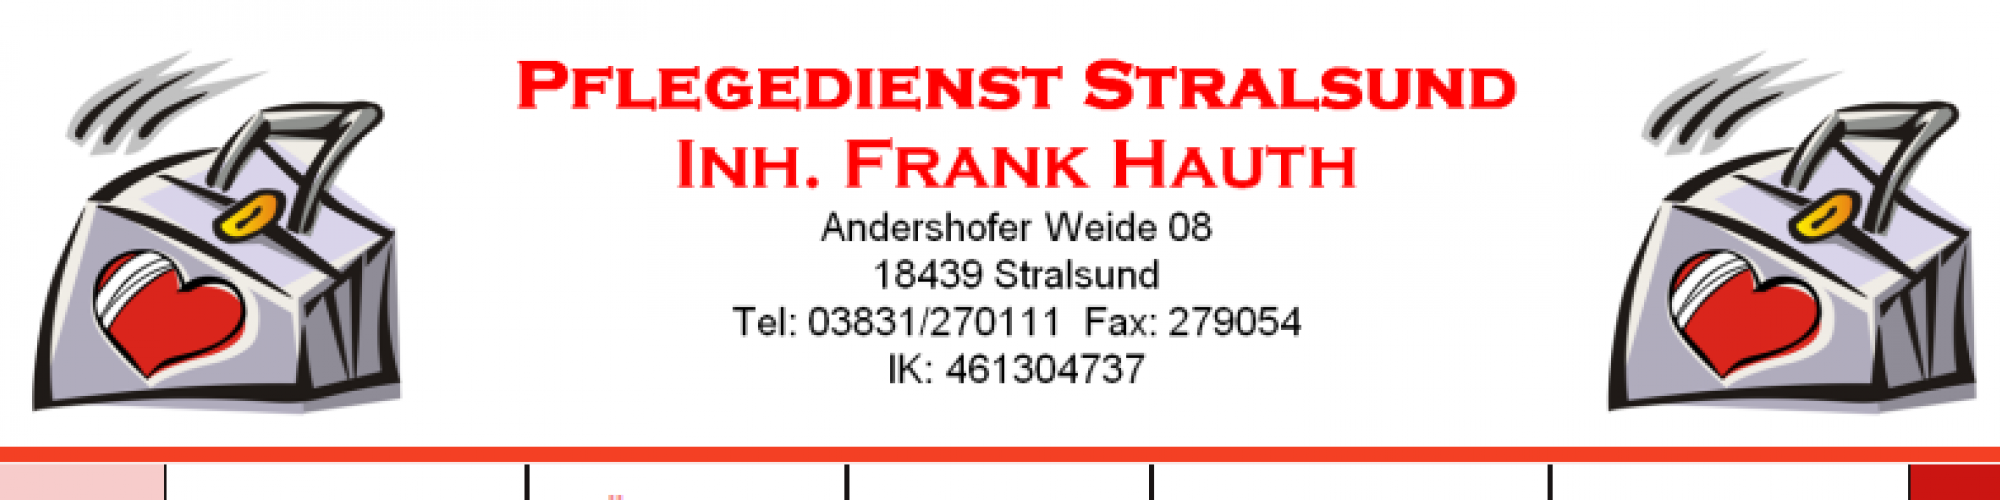 Pflegedienst Stralsund Inh. Frank Hauth